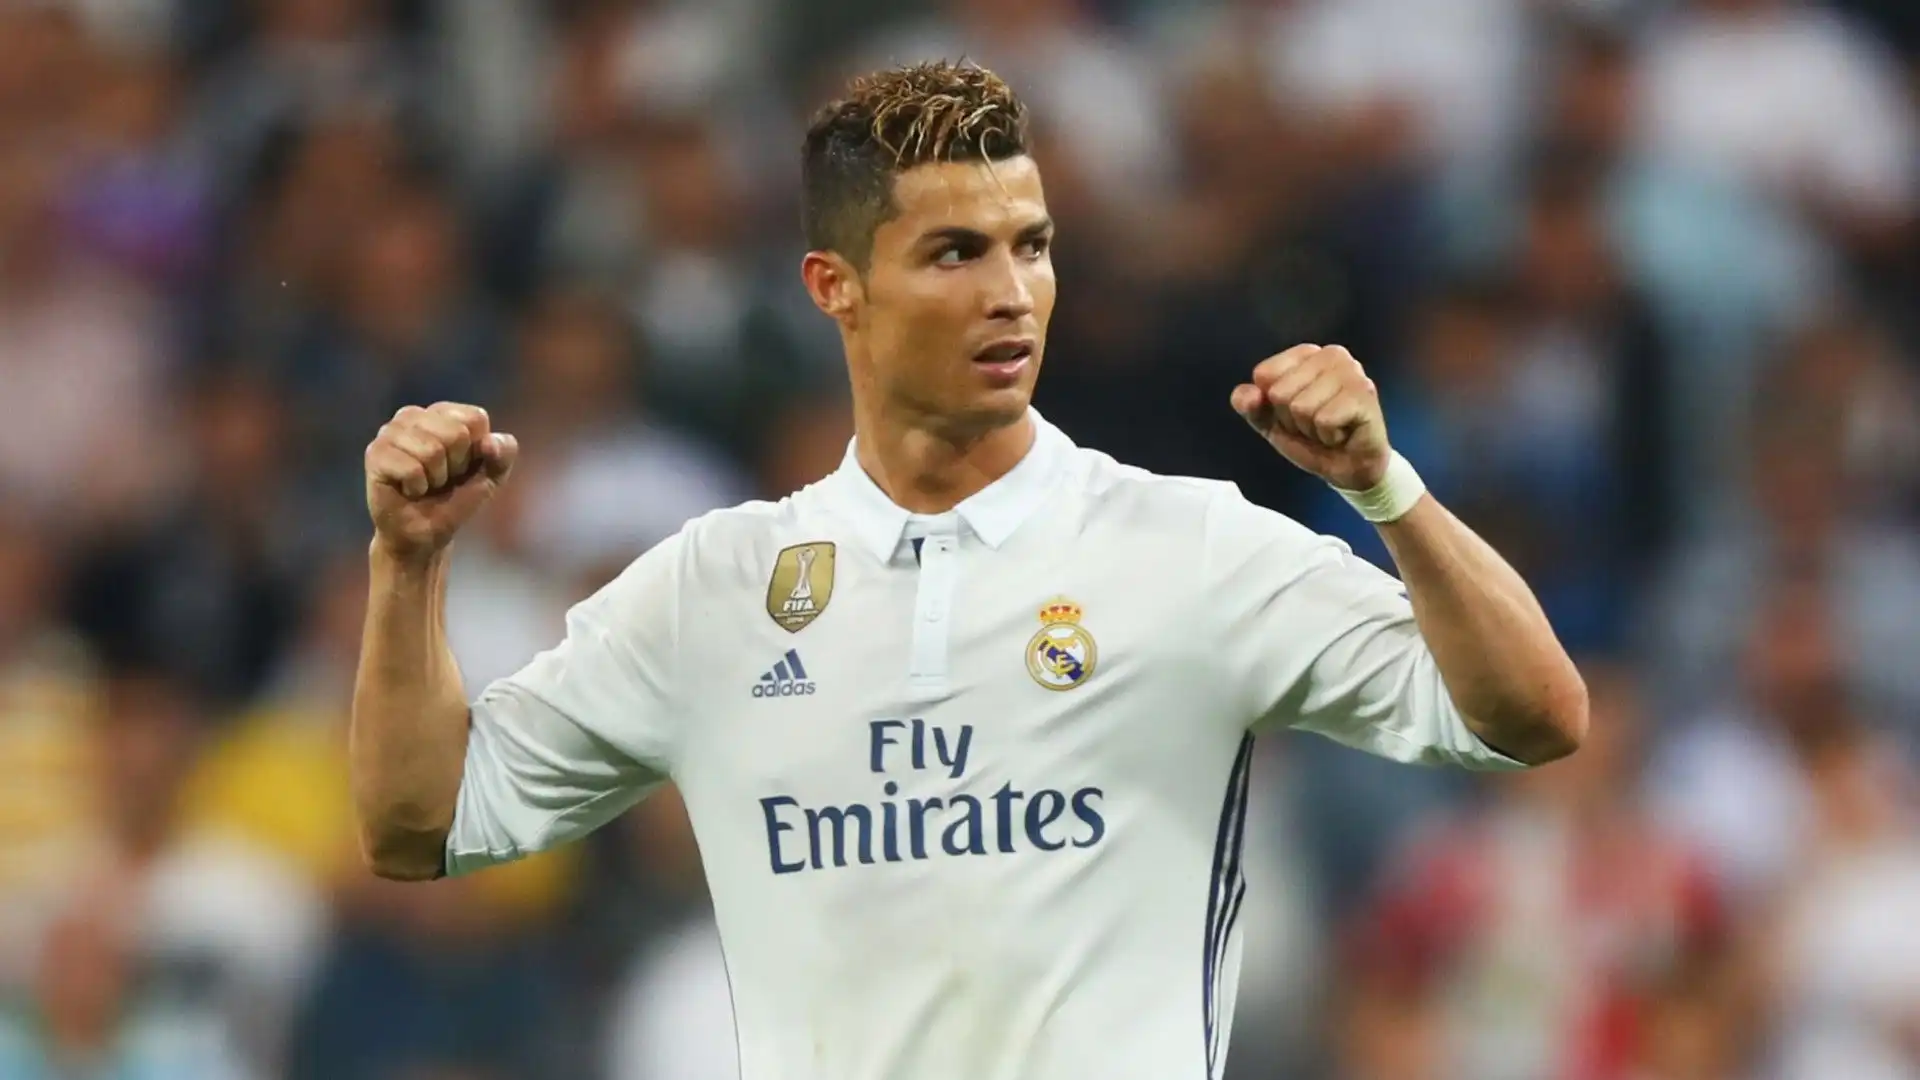 Nella semifinale di Champions League contro l'Atletico Madrid Cristiano Ronaldo segnò tutti e 3 i gol del Real Madrid (10', 73', 86')